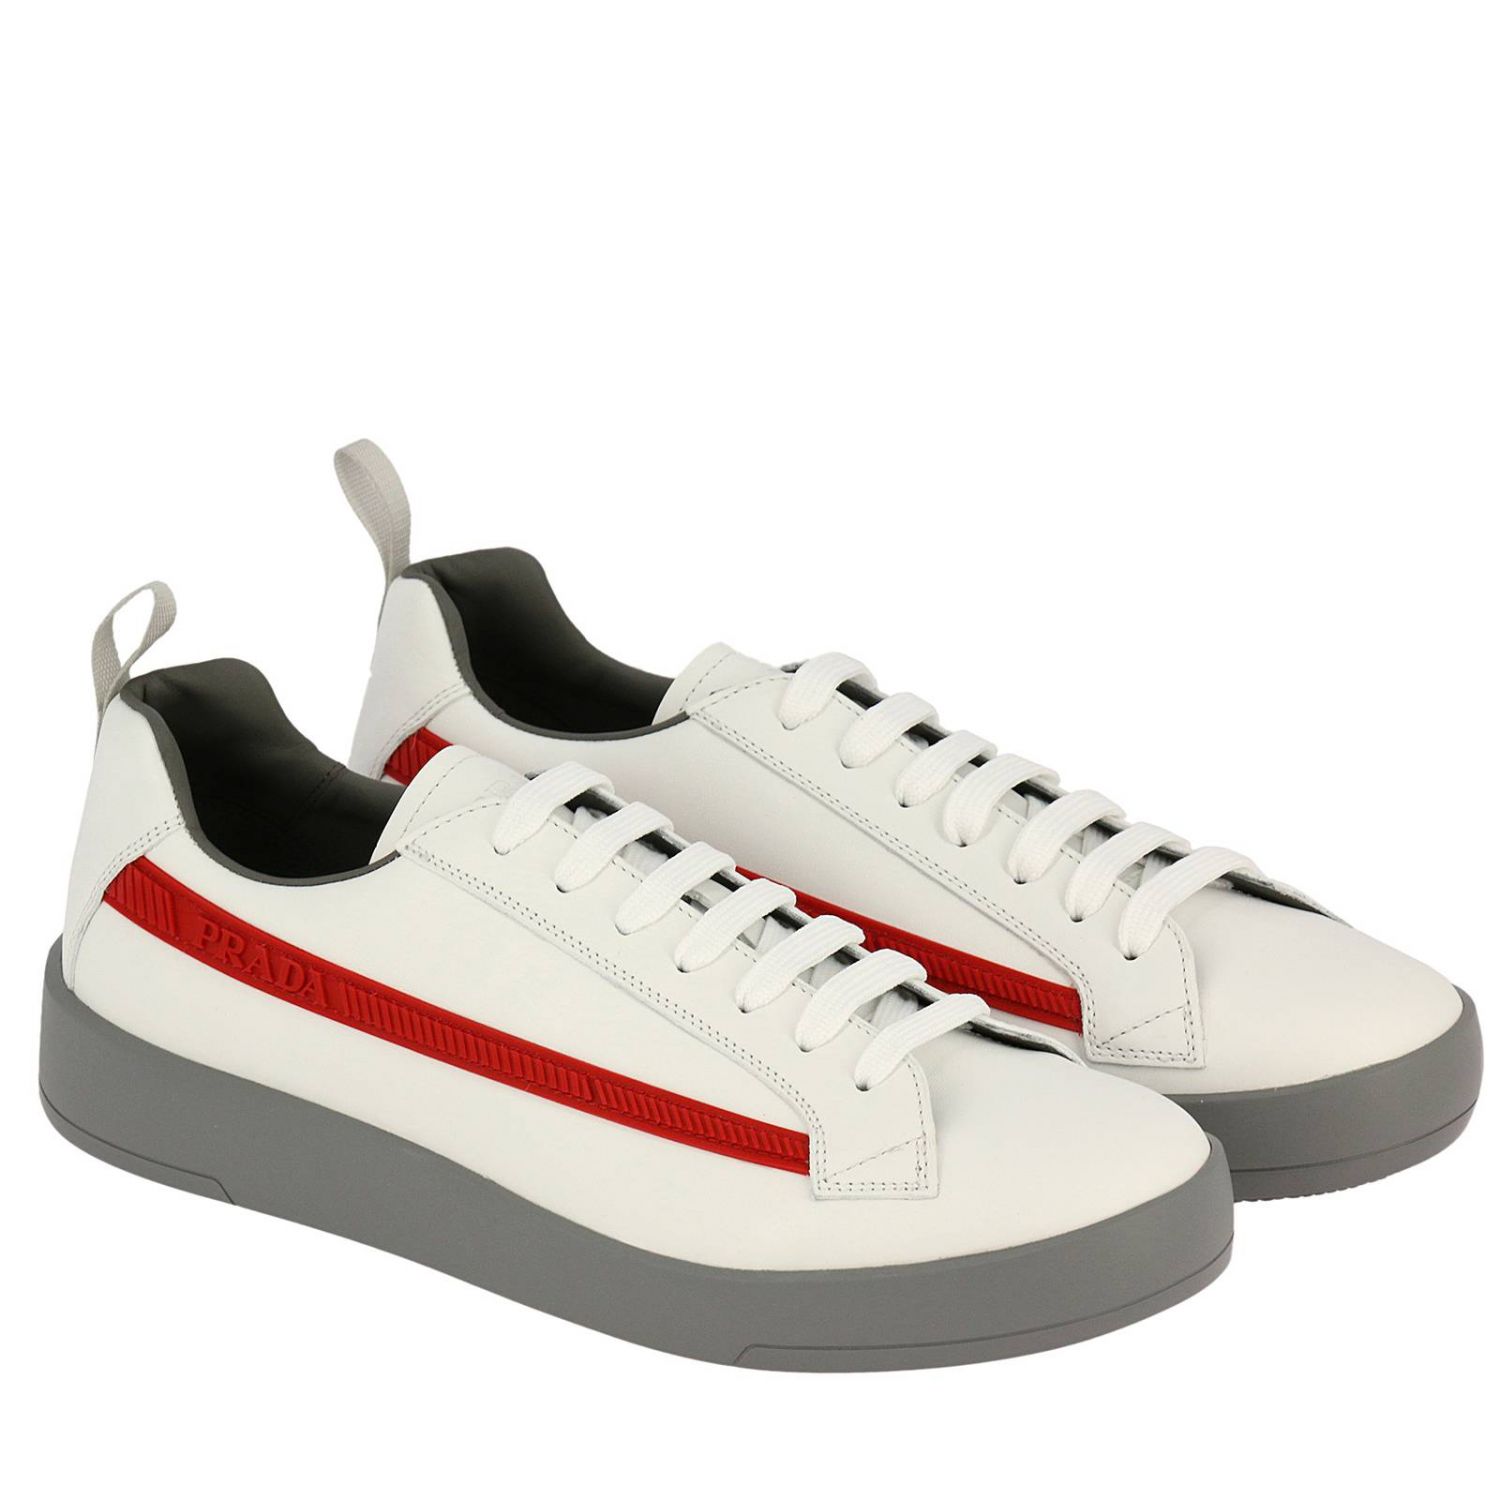 Shoes men Prada Sneakers Prada Men White Sneakers Prada 4E3196 6DT